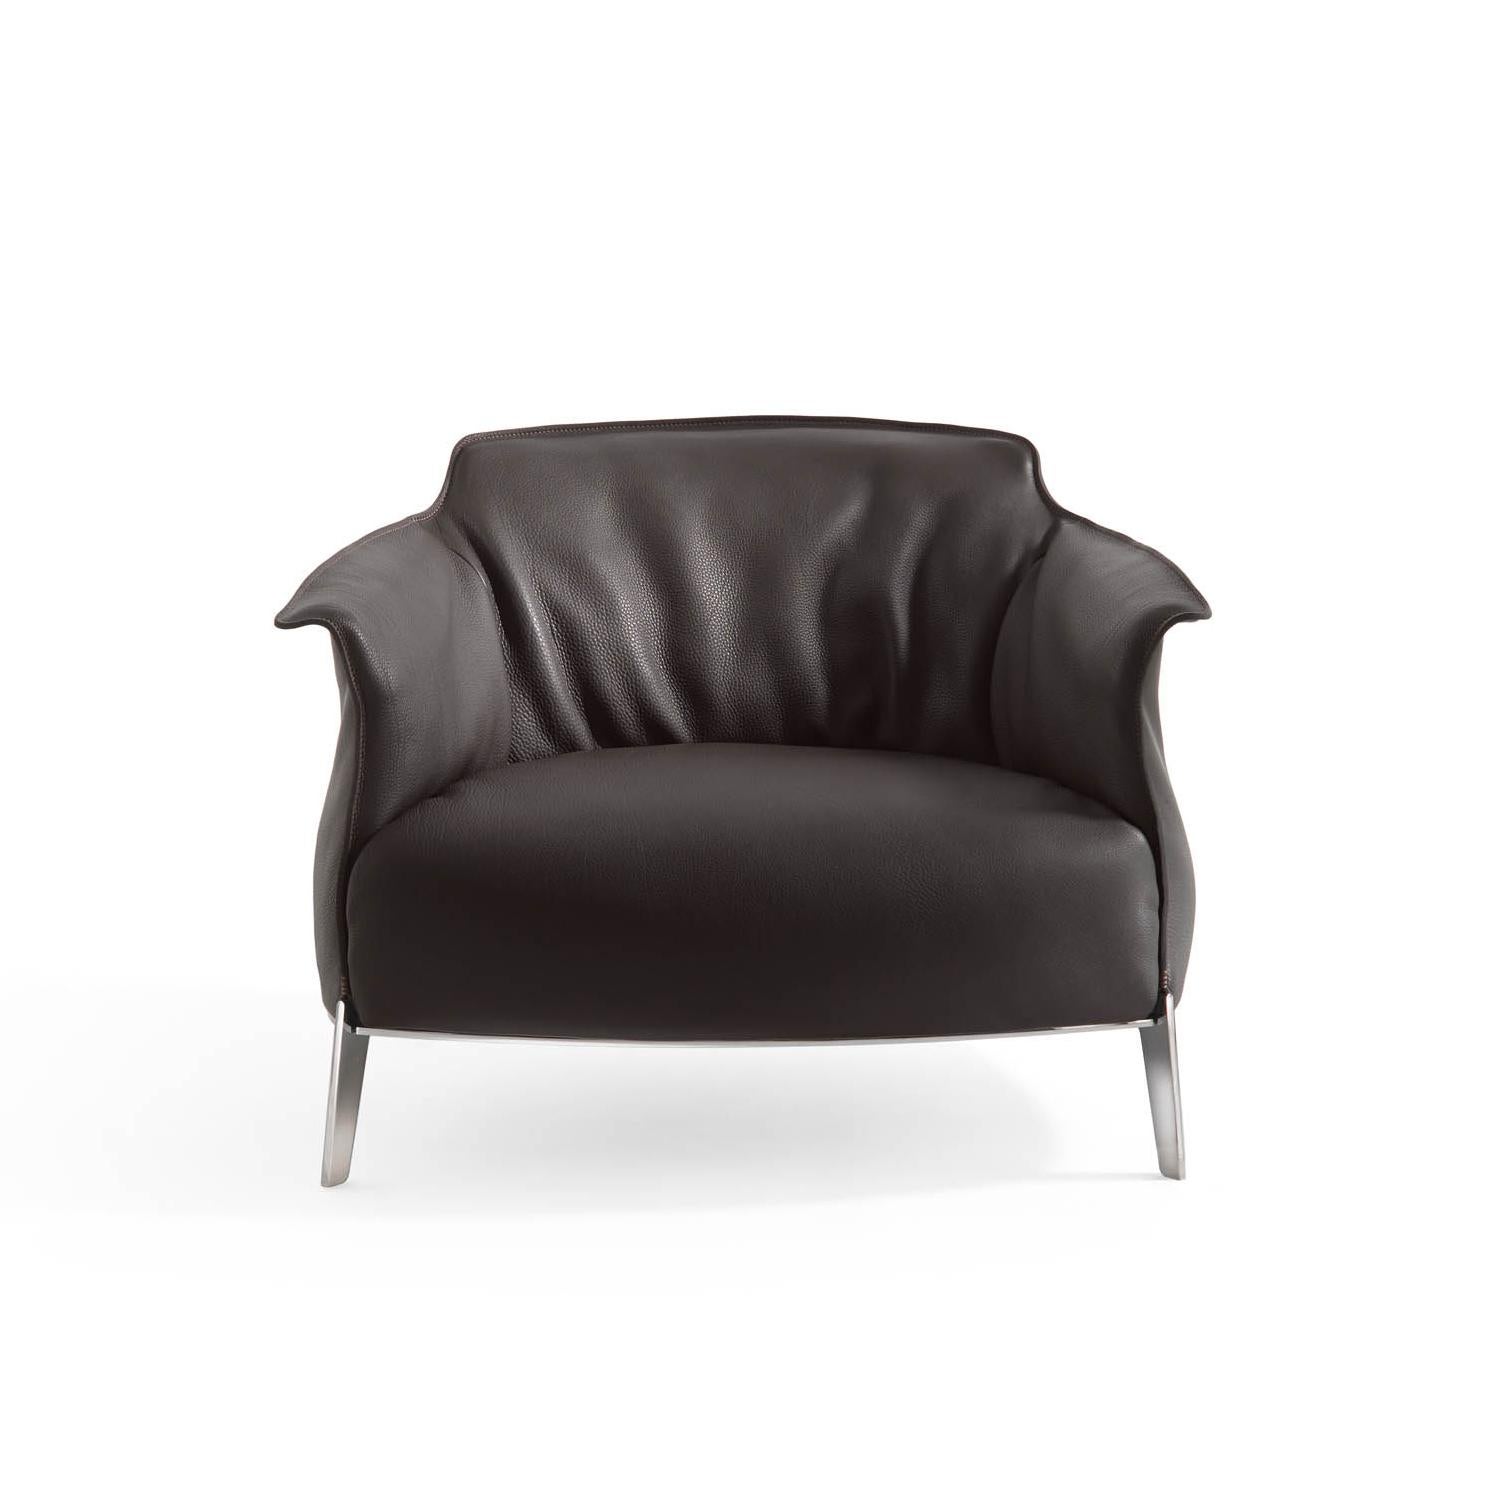 Jean-Marie Massaud ajoute un surplus de douceur à la collection Archibald : le fauteuil Archibald Gran Comfort. L'élément central est le grand coussin d'assise souple. Un luxueux revêtement en cuir avec un riche padding en duvet d'oie qui crée un